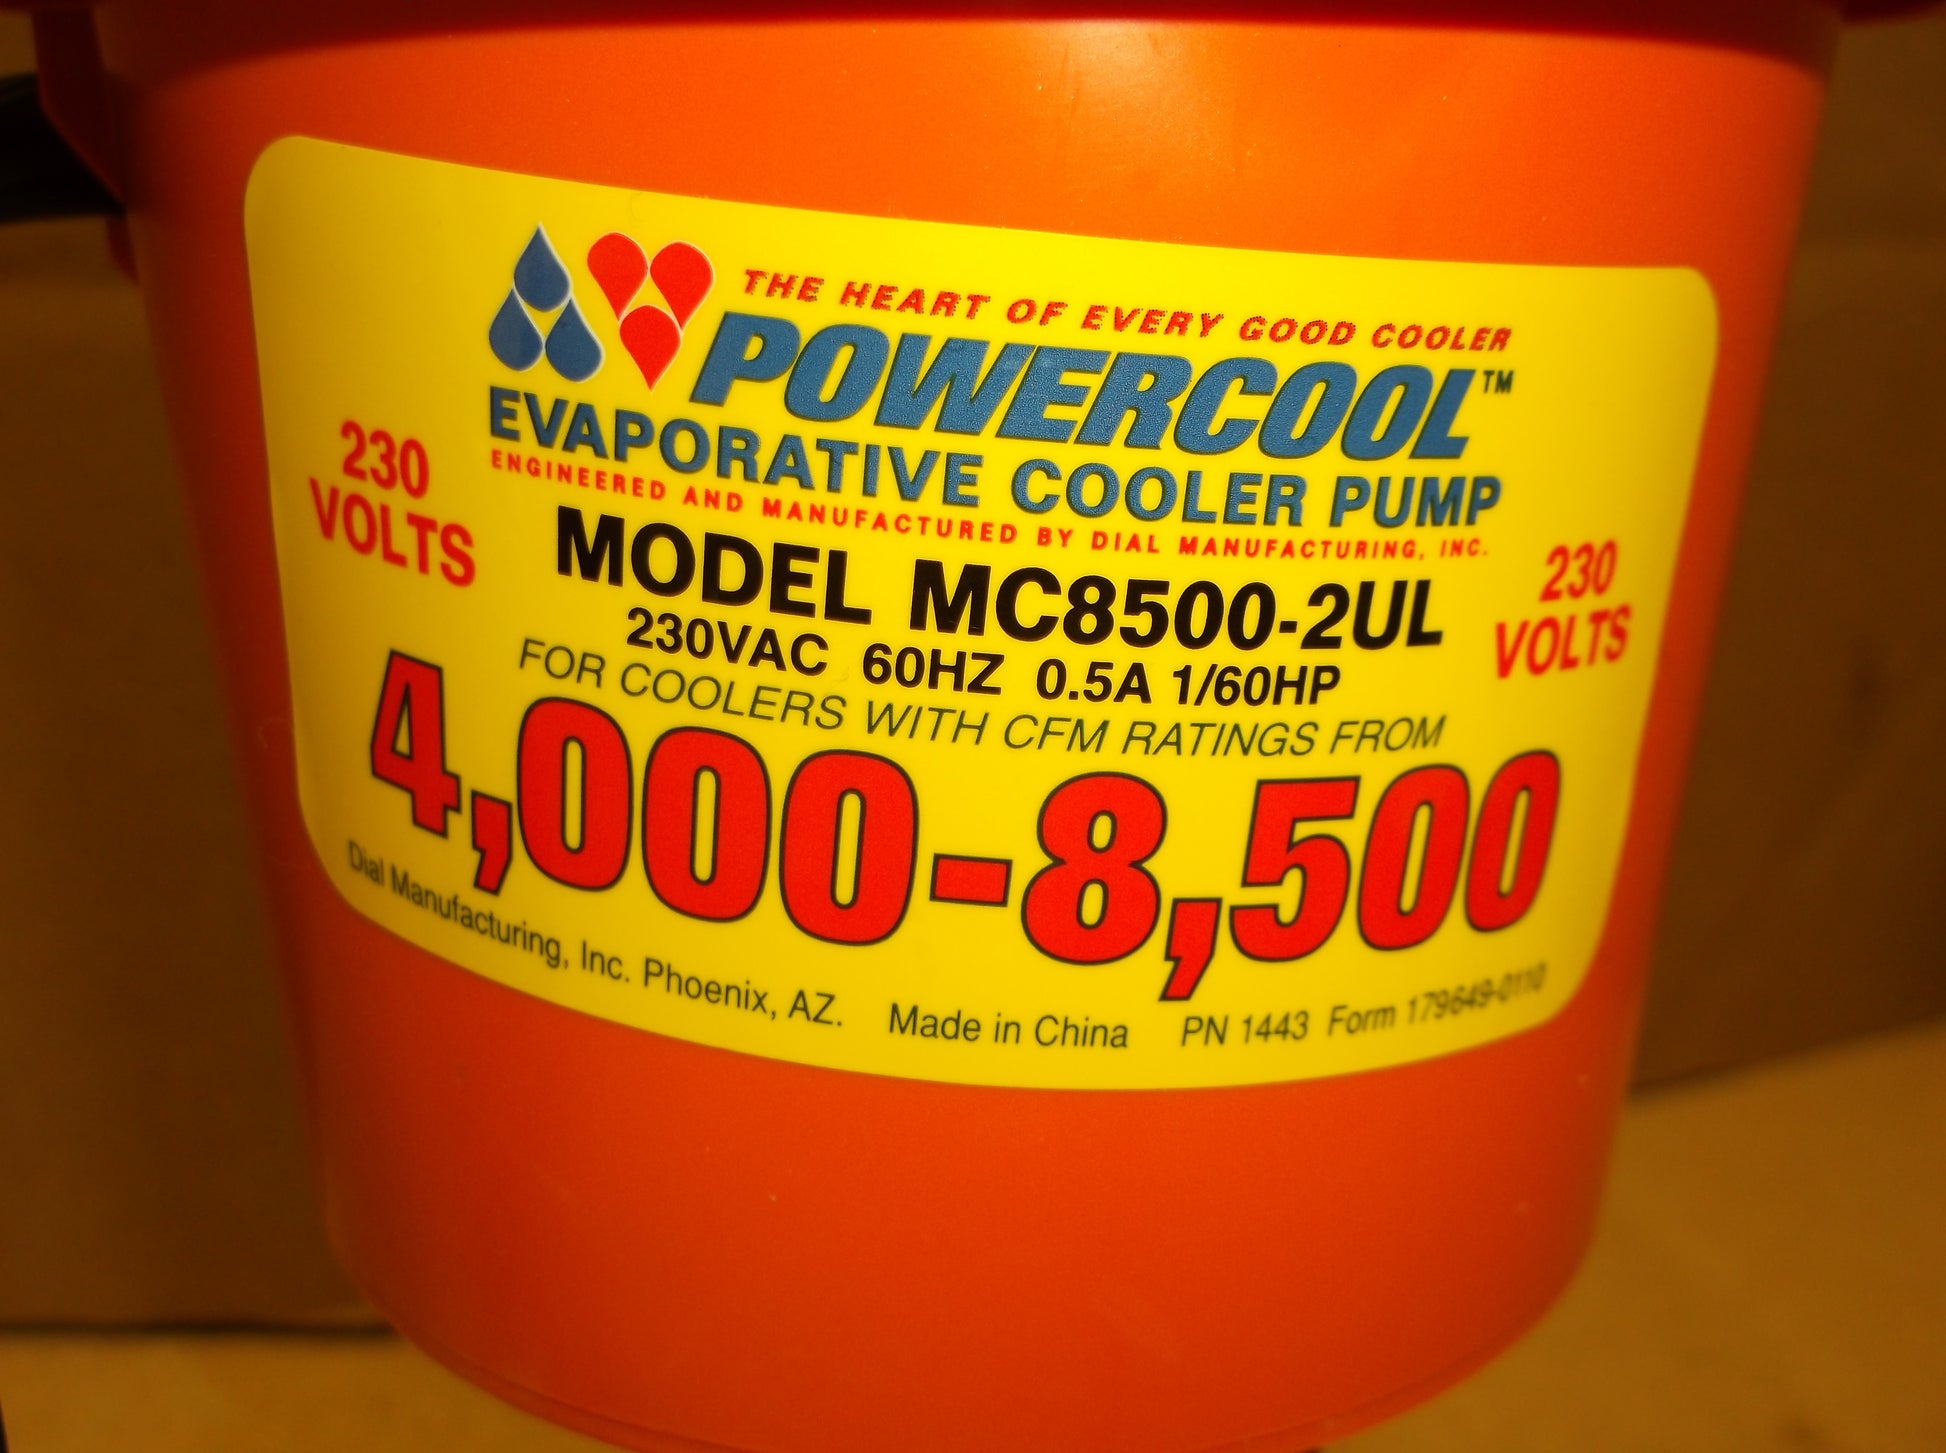 1/60HP POWERCOOL EVAPORATIVE COOLER PUMP, 230/60/1